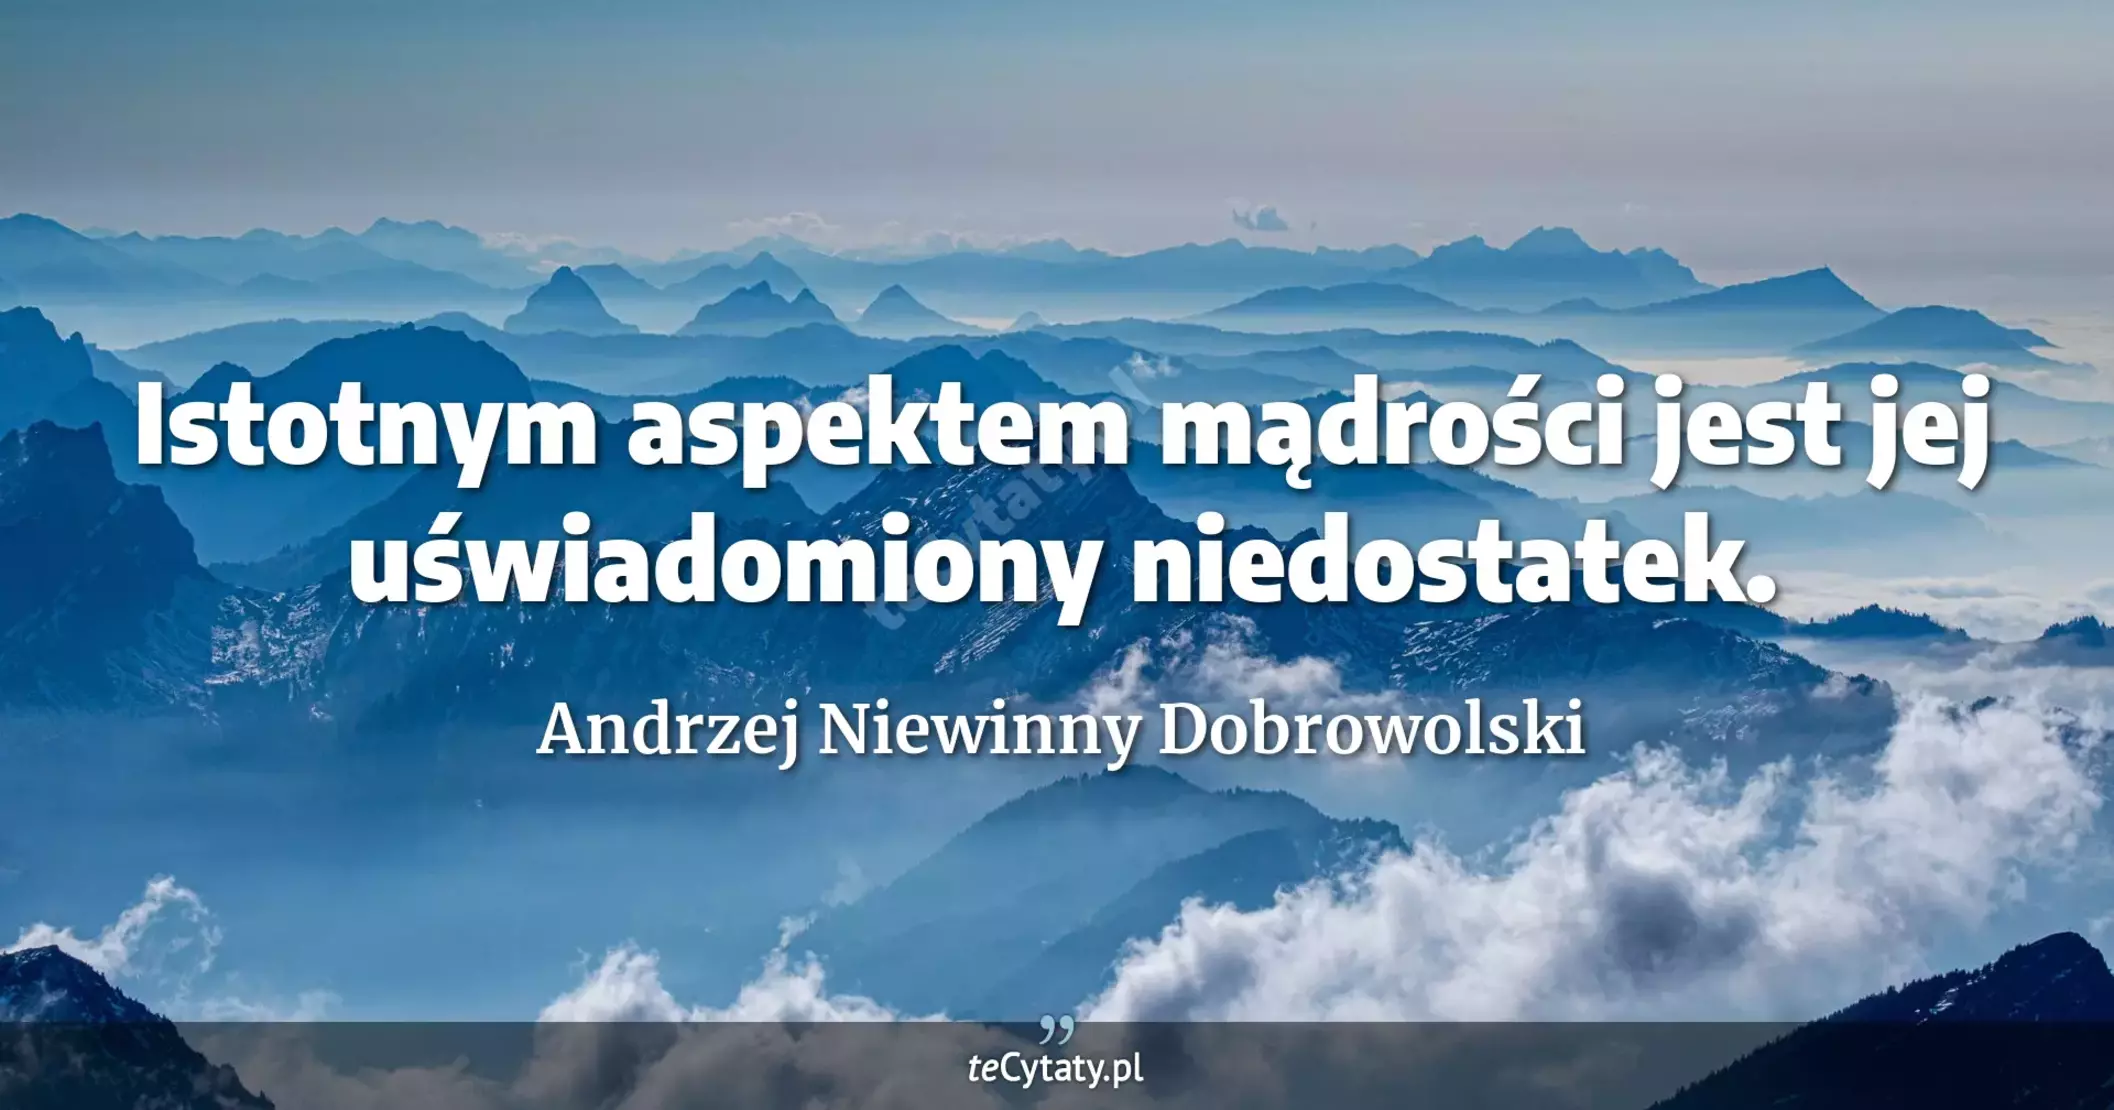 Istotnym aspektem mądrości jest jej uświadomiony niedostatek. - Andrzej Niewinny Dobrowolski